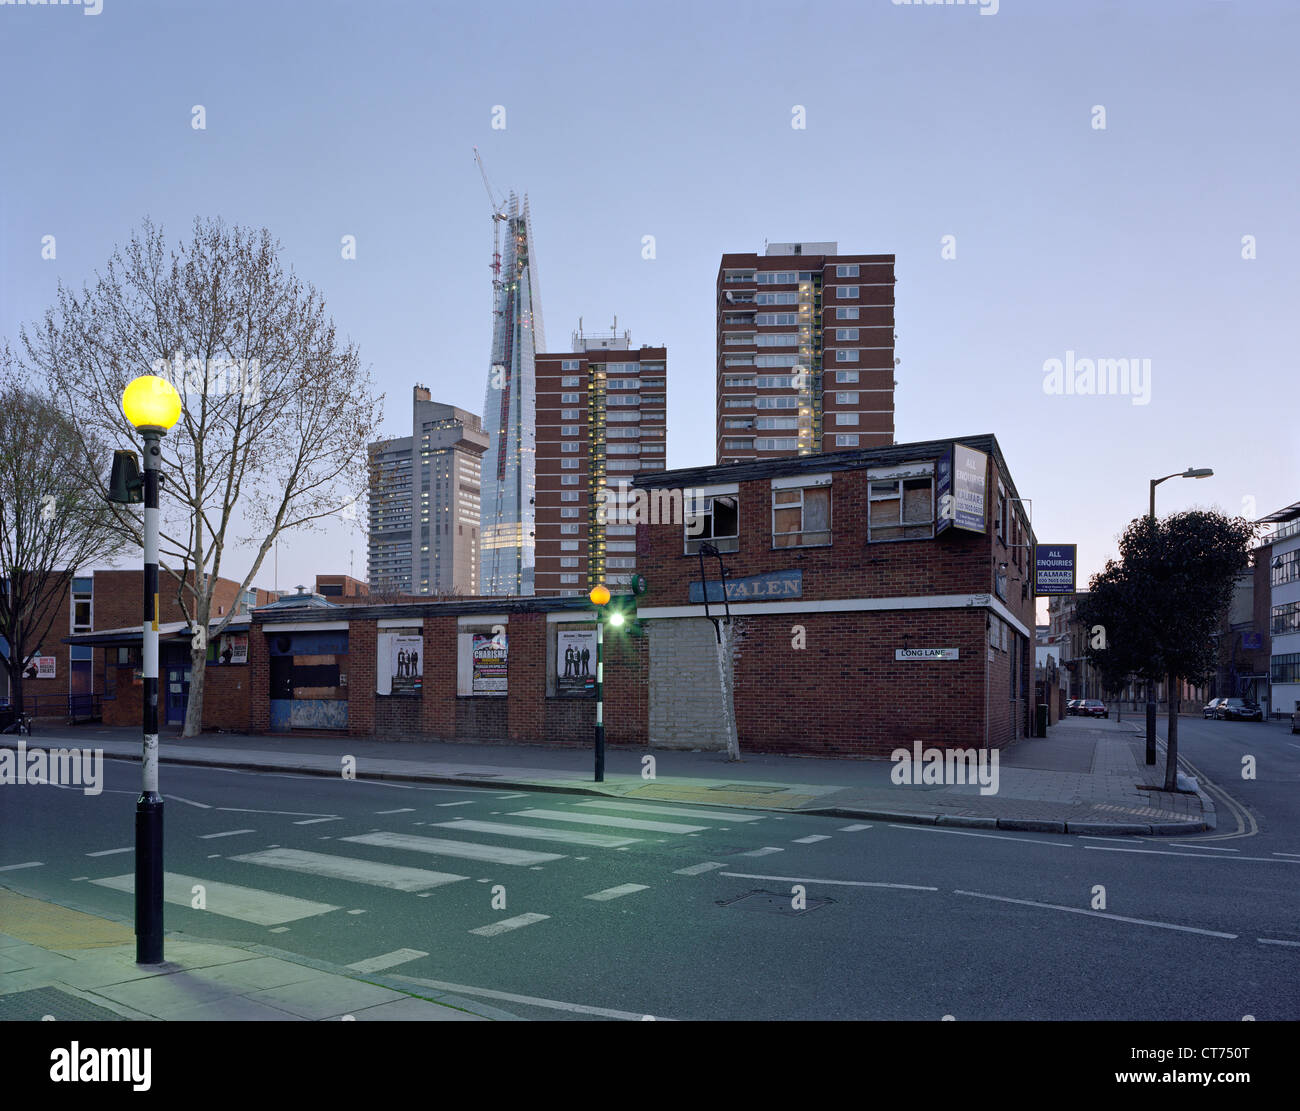 Shard, London, Vereinigtes Königreich. Architekt: Renzo Piano Building Workshop, 2012. Dawn-Blick vom Long Lane zeigen urbanen Kontext. Stockfoto